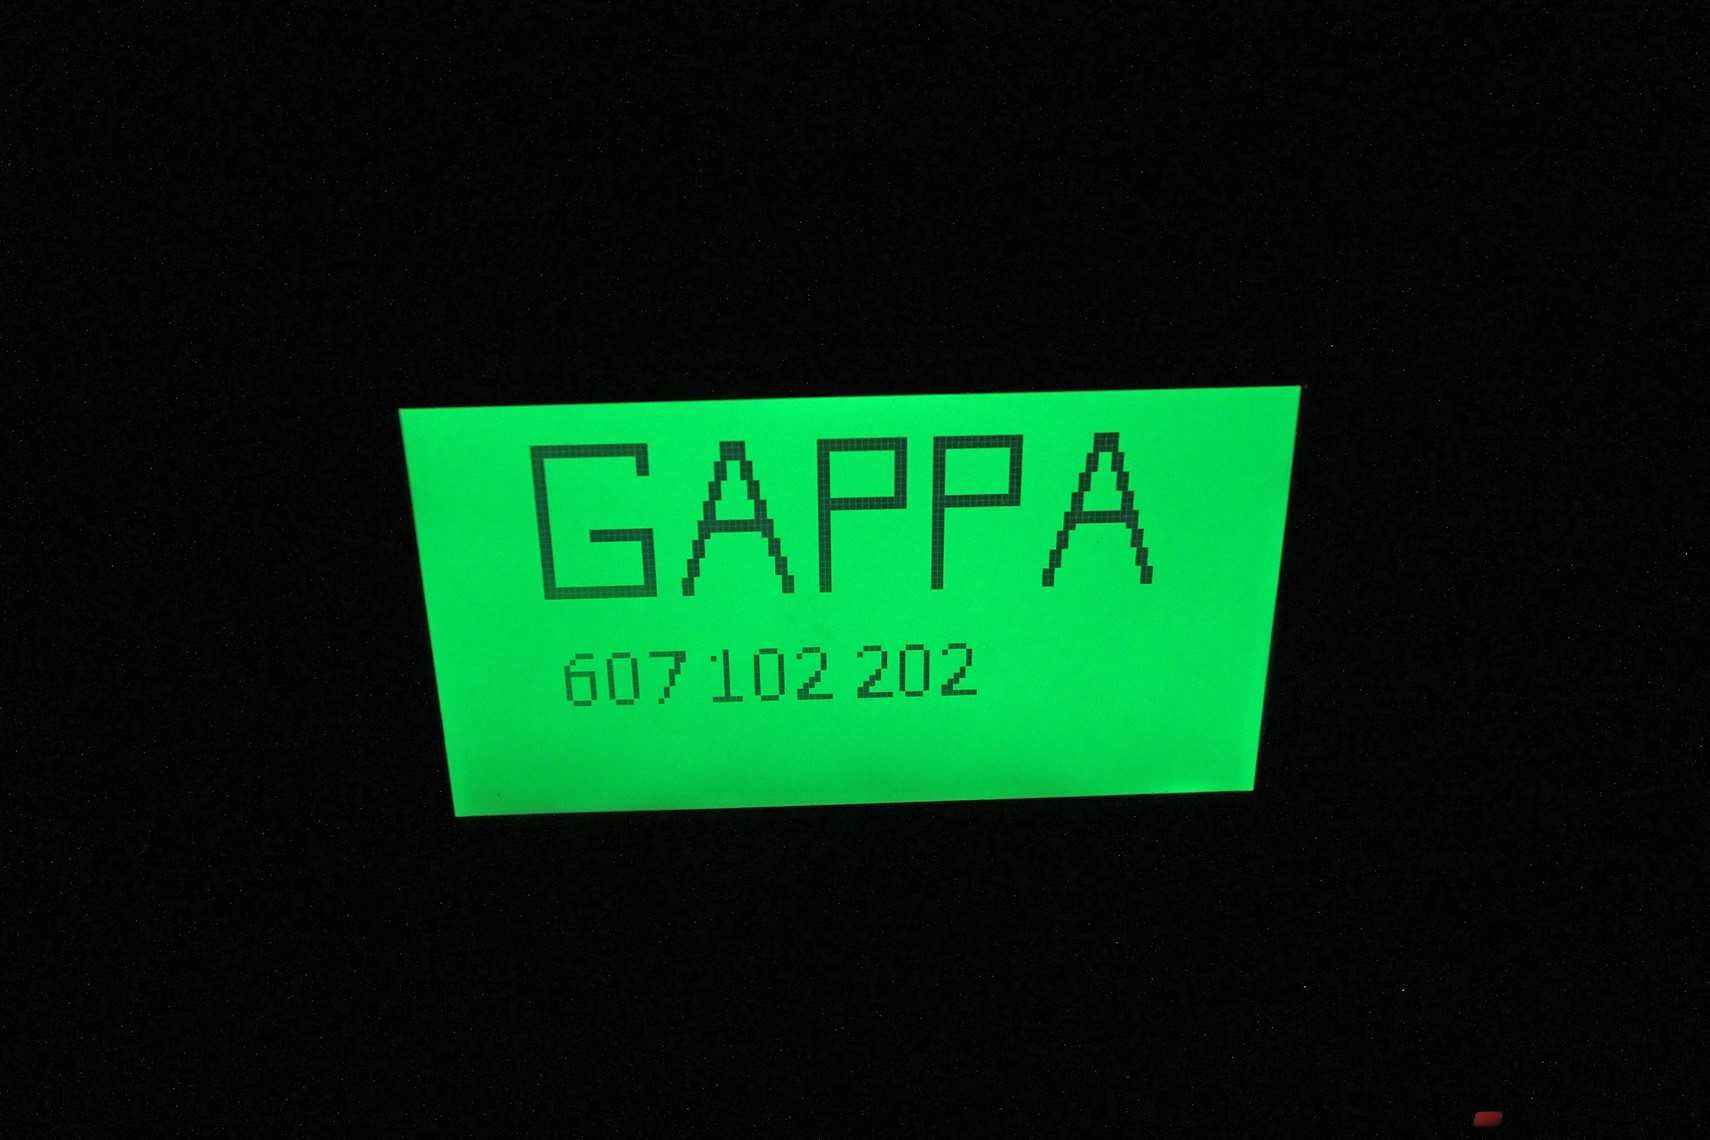 Agregat prądotwórczy GAPPA 70 kw